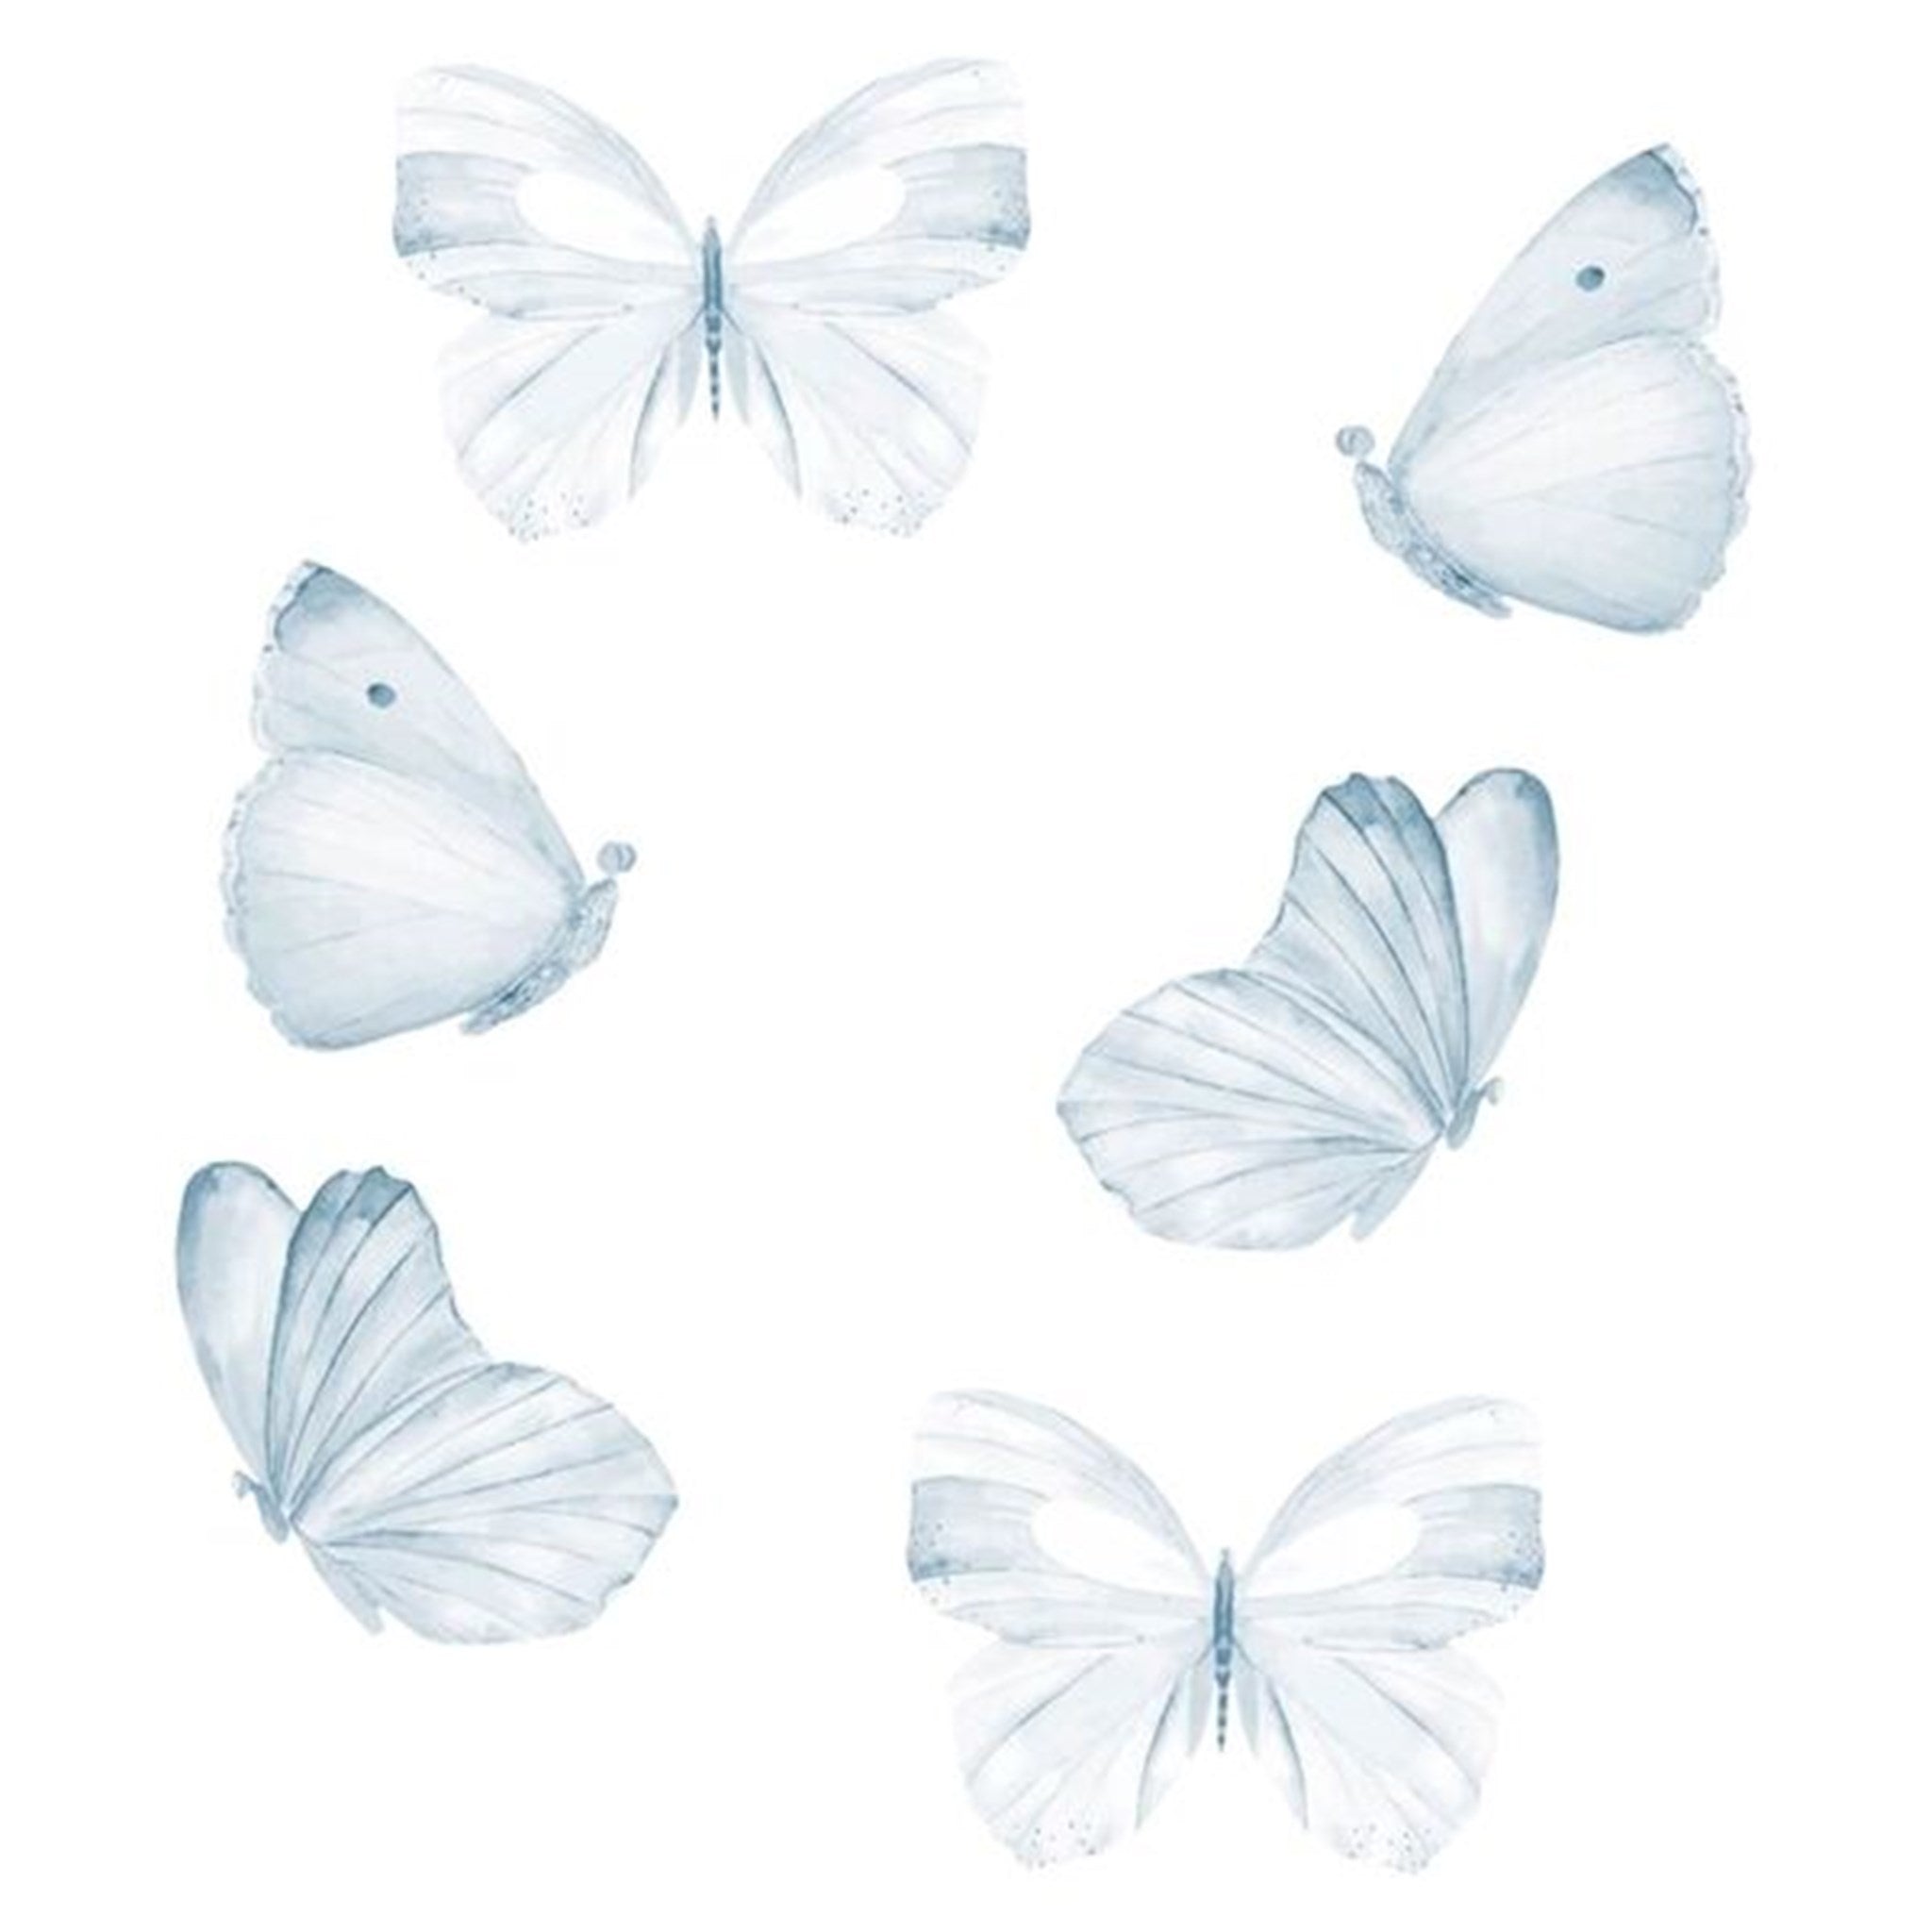 That's Mine Wall Stories Butterflies Blue